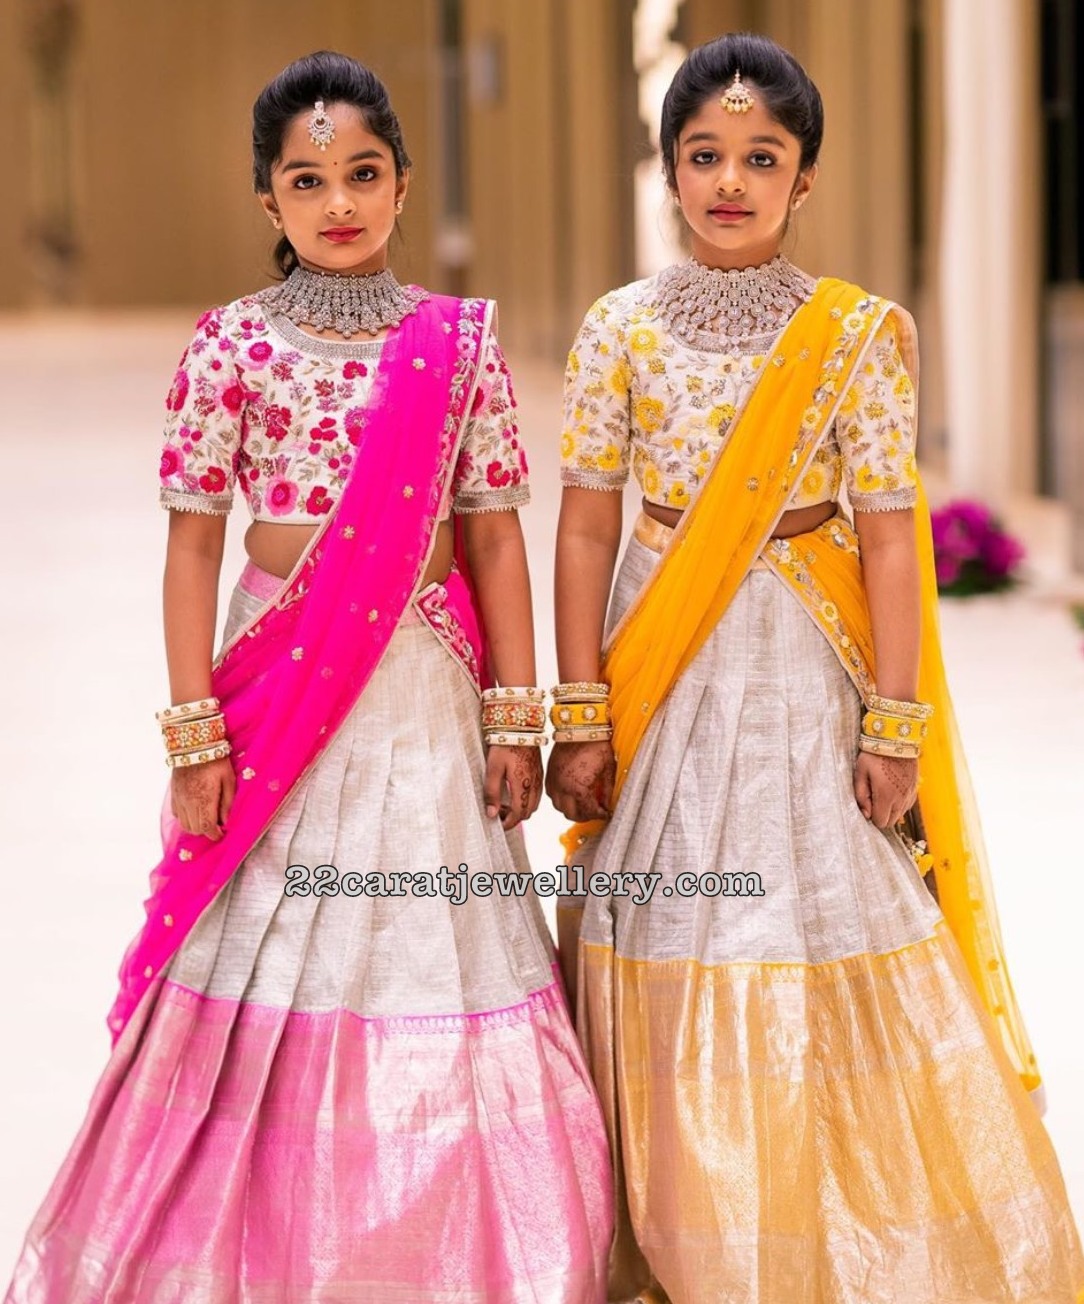 Viranica and Vishnu Daughters in Silver Half Sarees - Indian Dresses